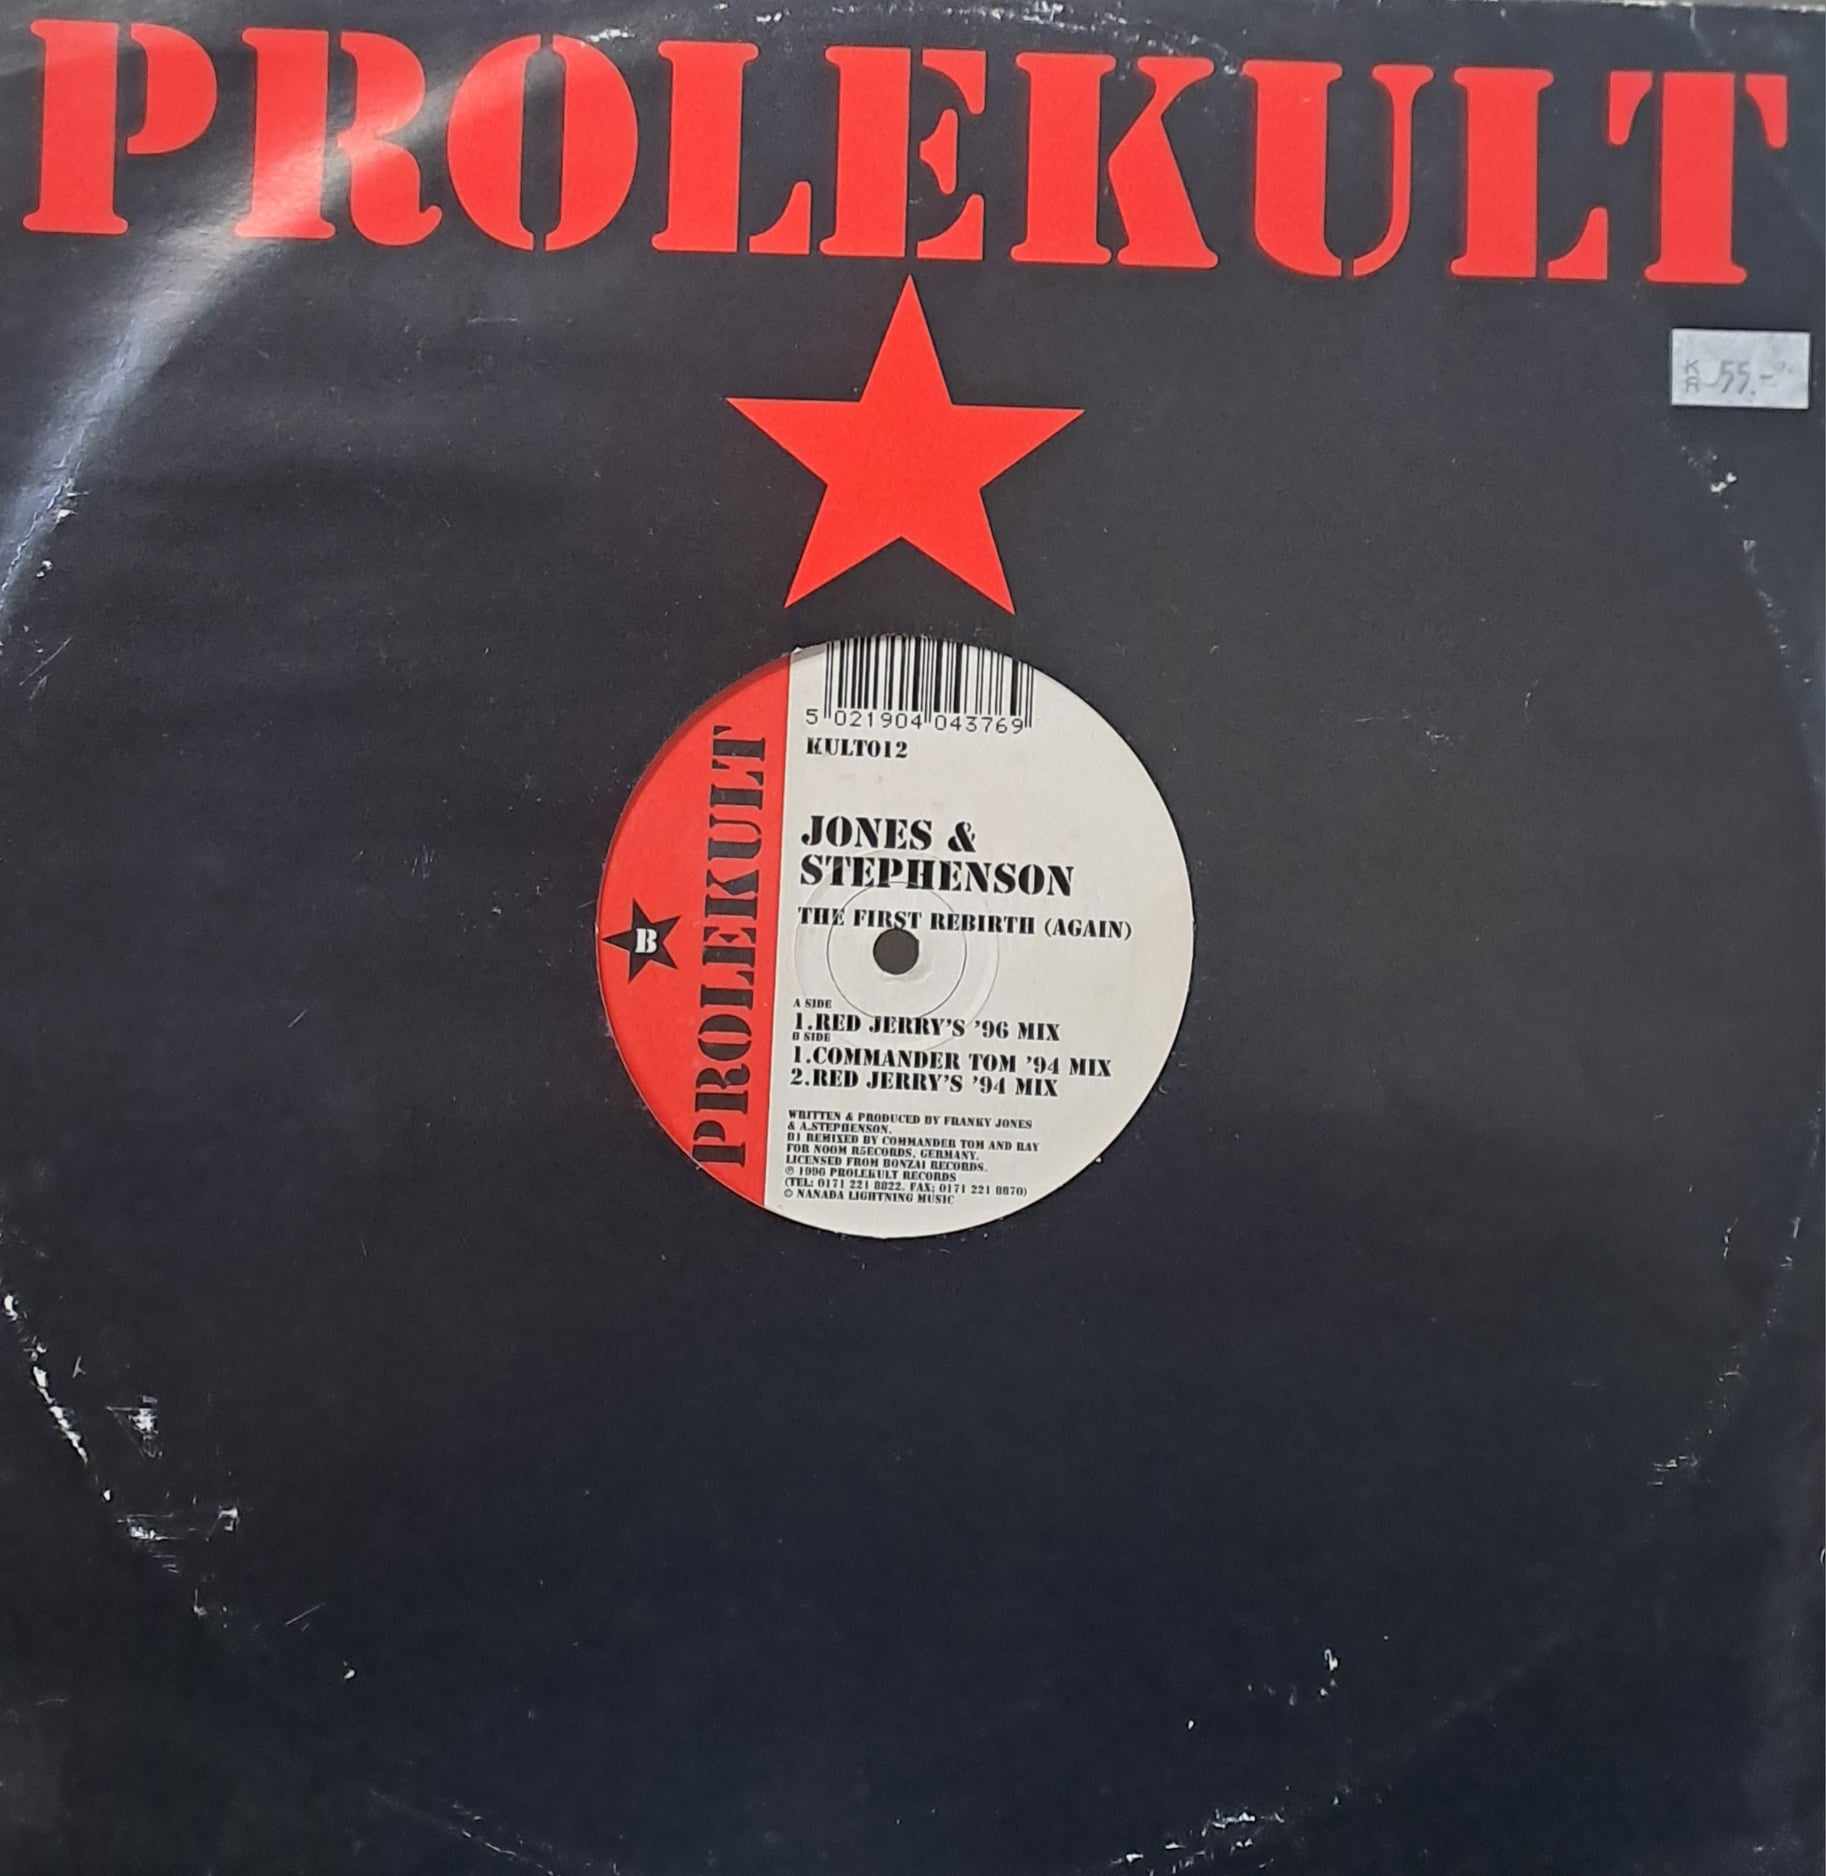 Prolekult 012 - vinyle Trance